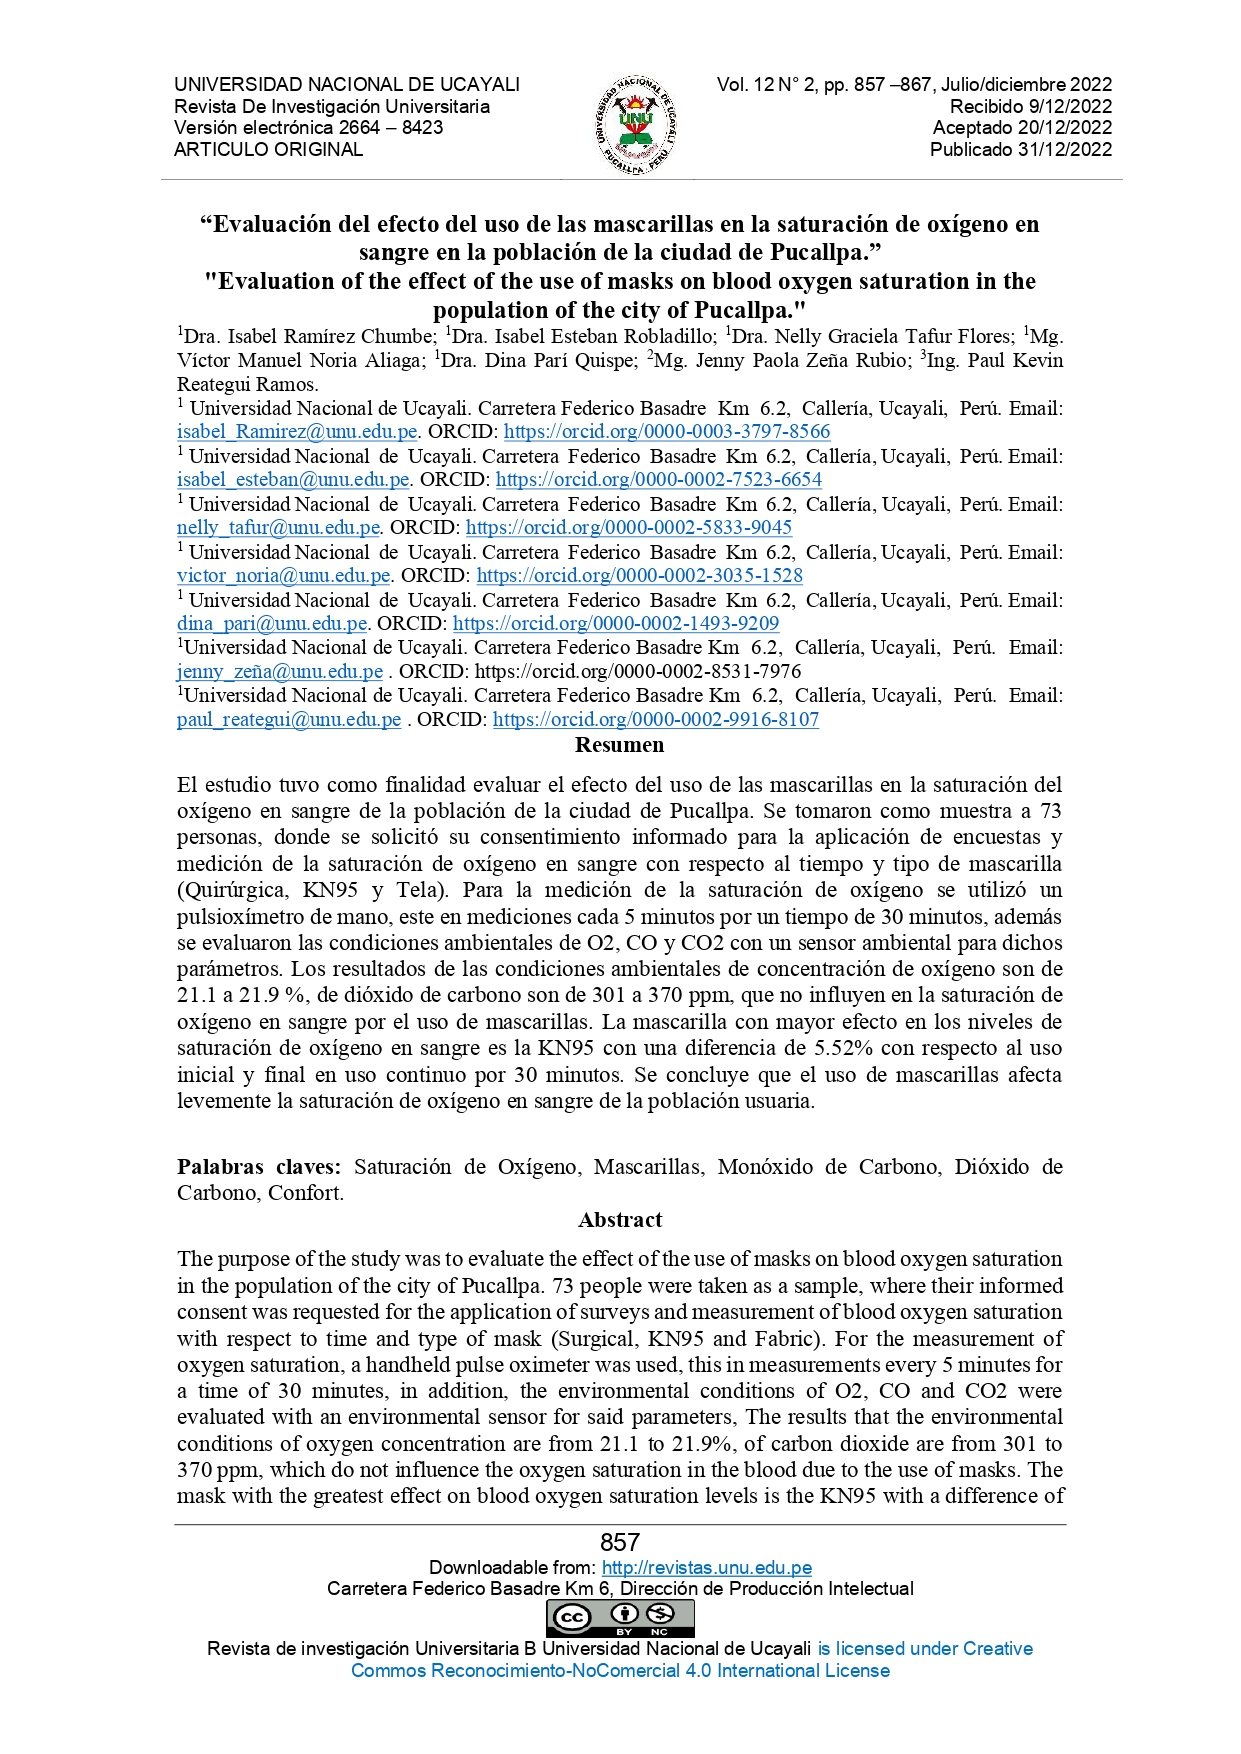 Evaluación del efecto del uso de las mascarillas en la saturación de oxígeno en sangre en la población de la ciudad de Pucallpa